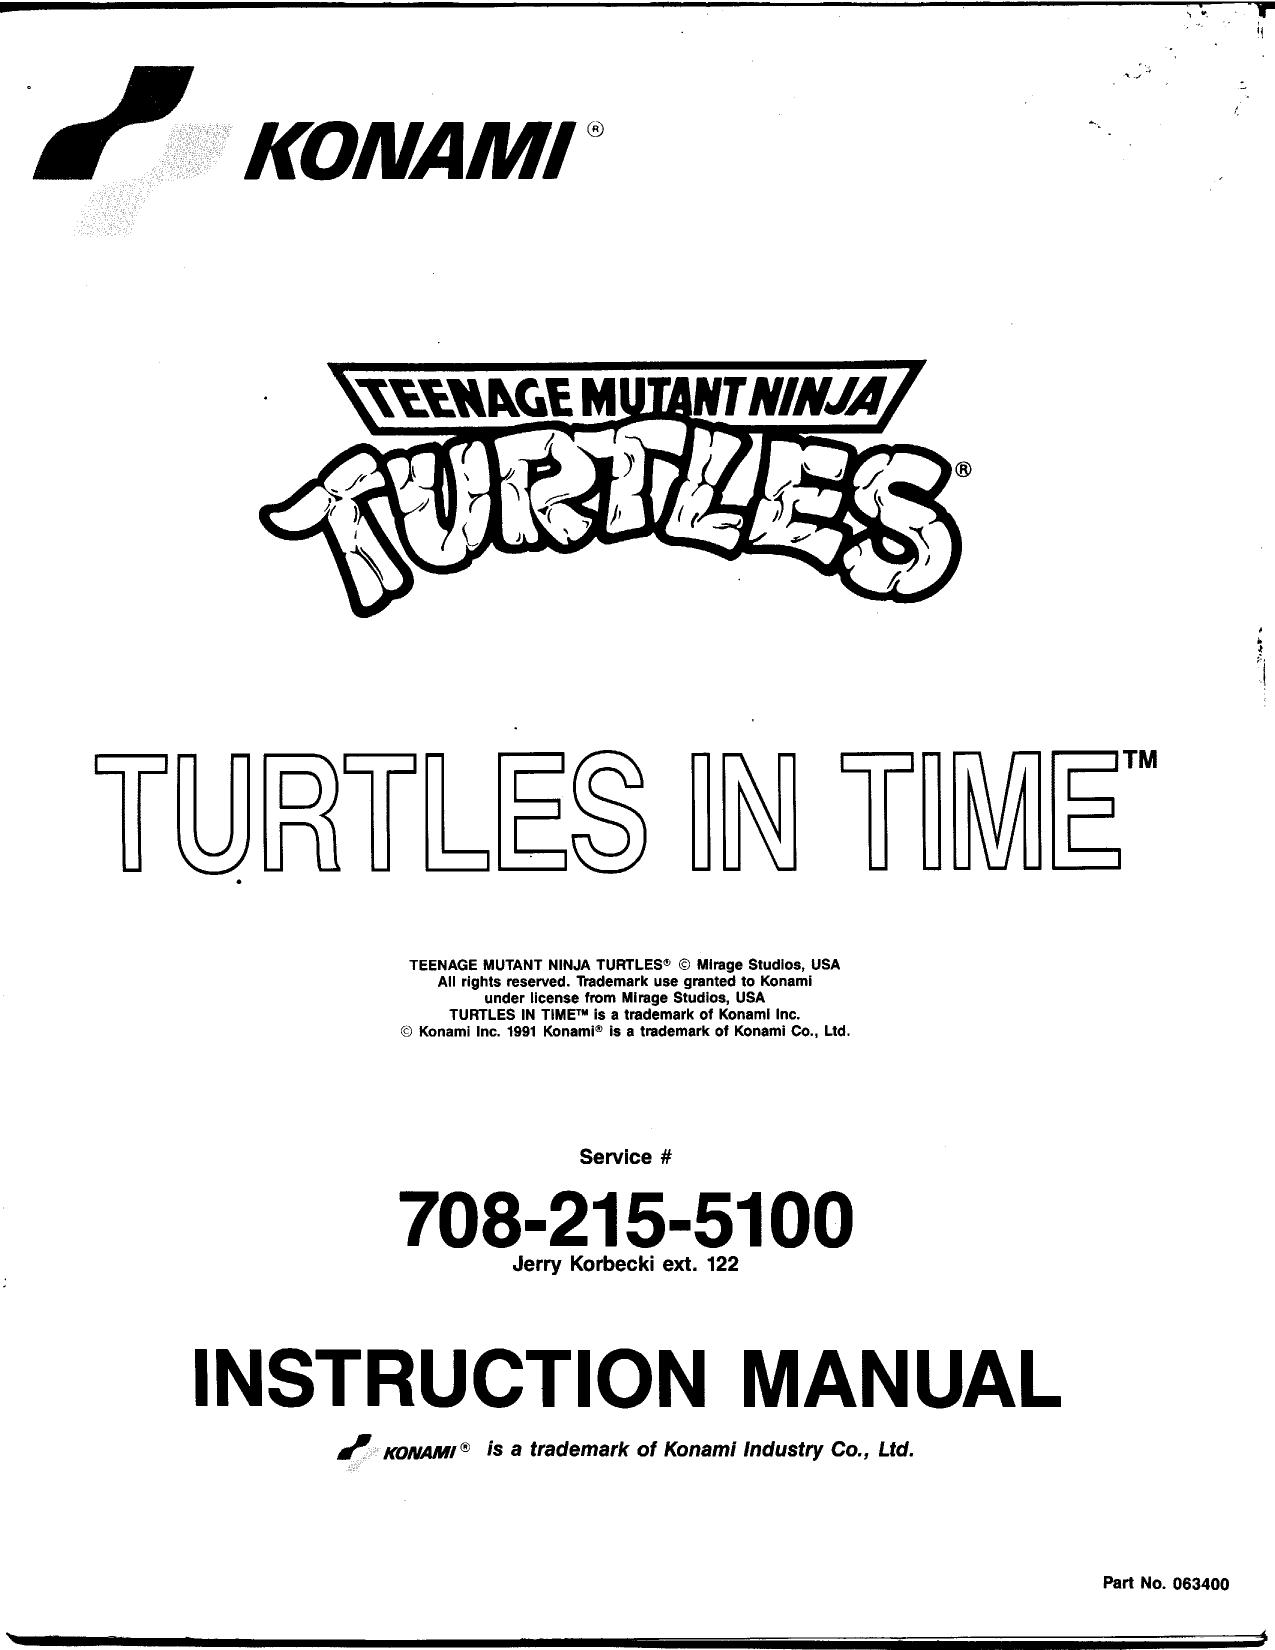 TMNT Turtles in Time